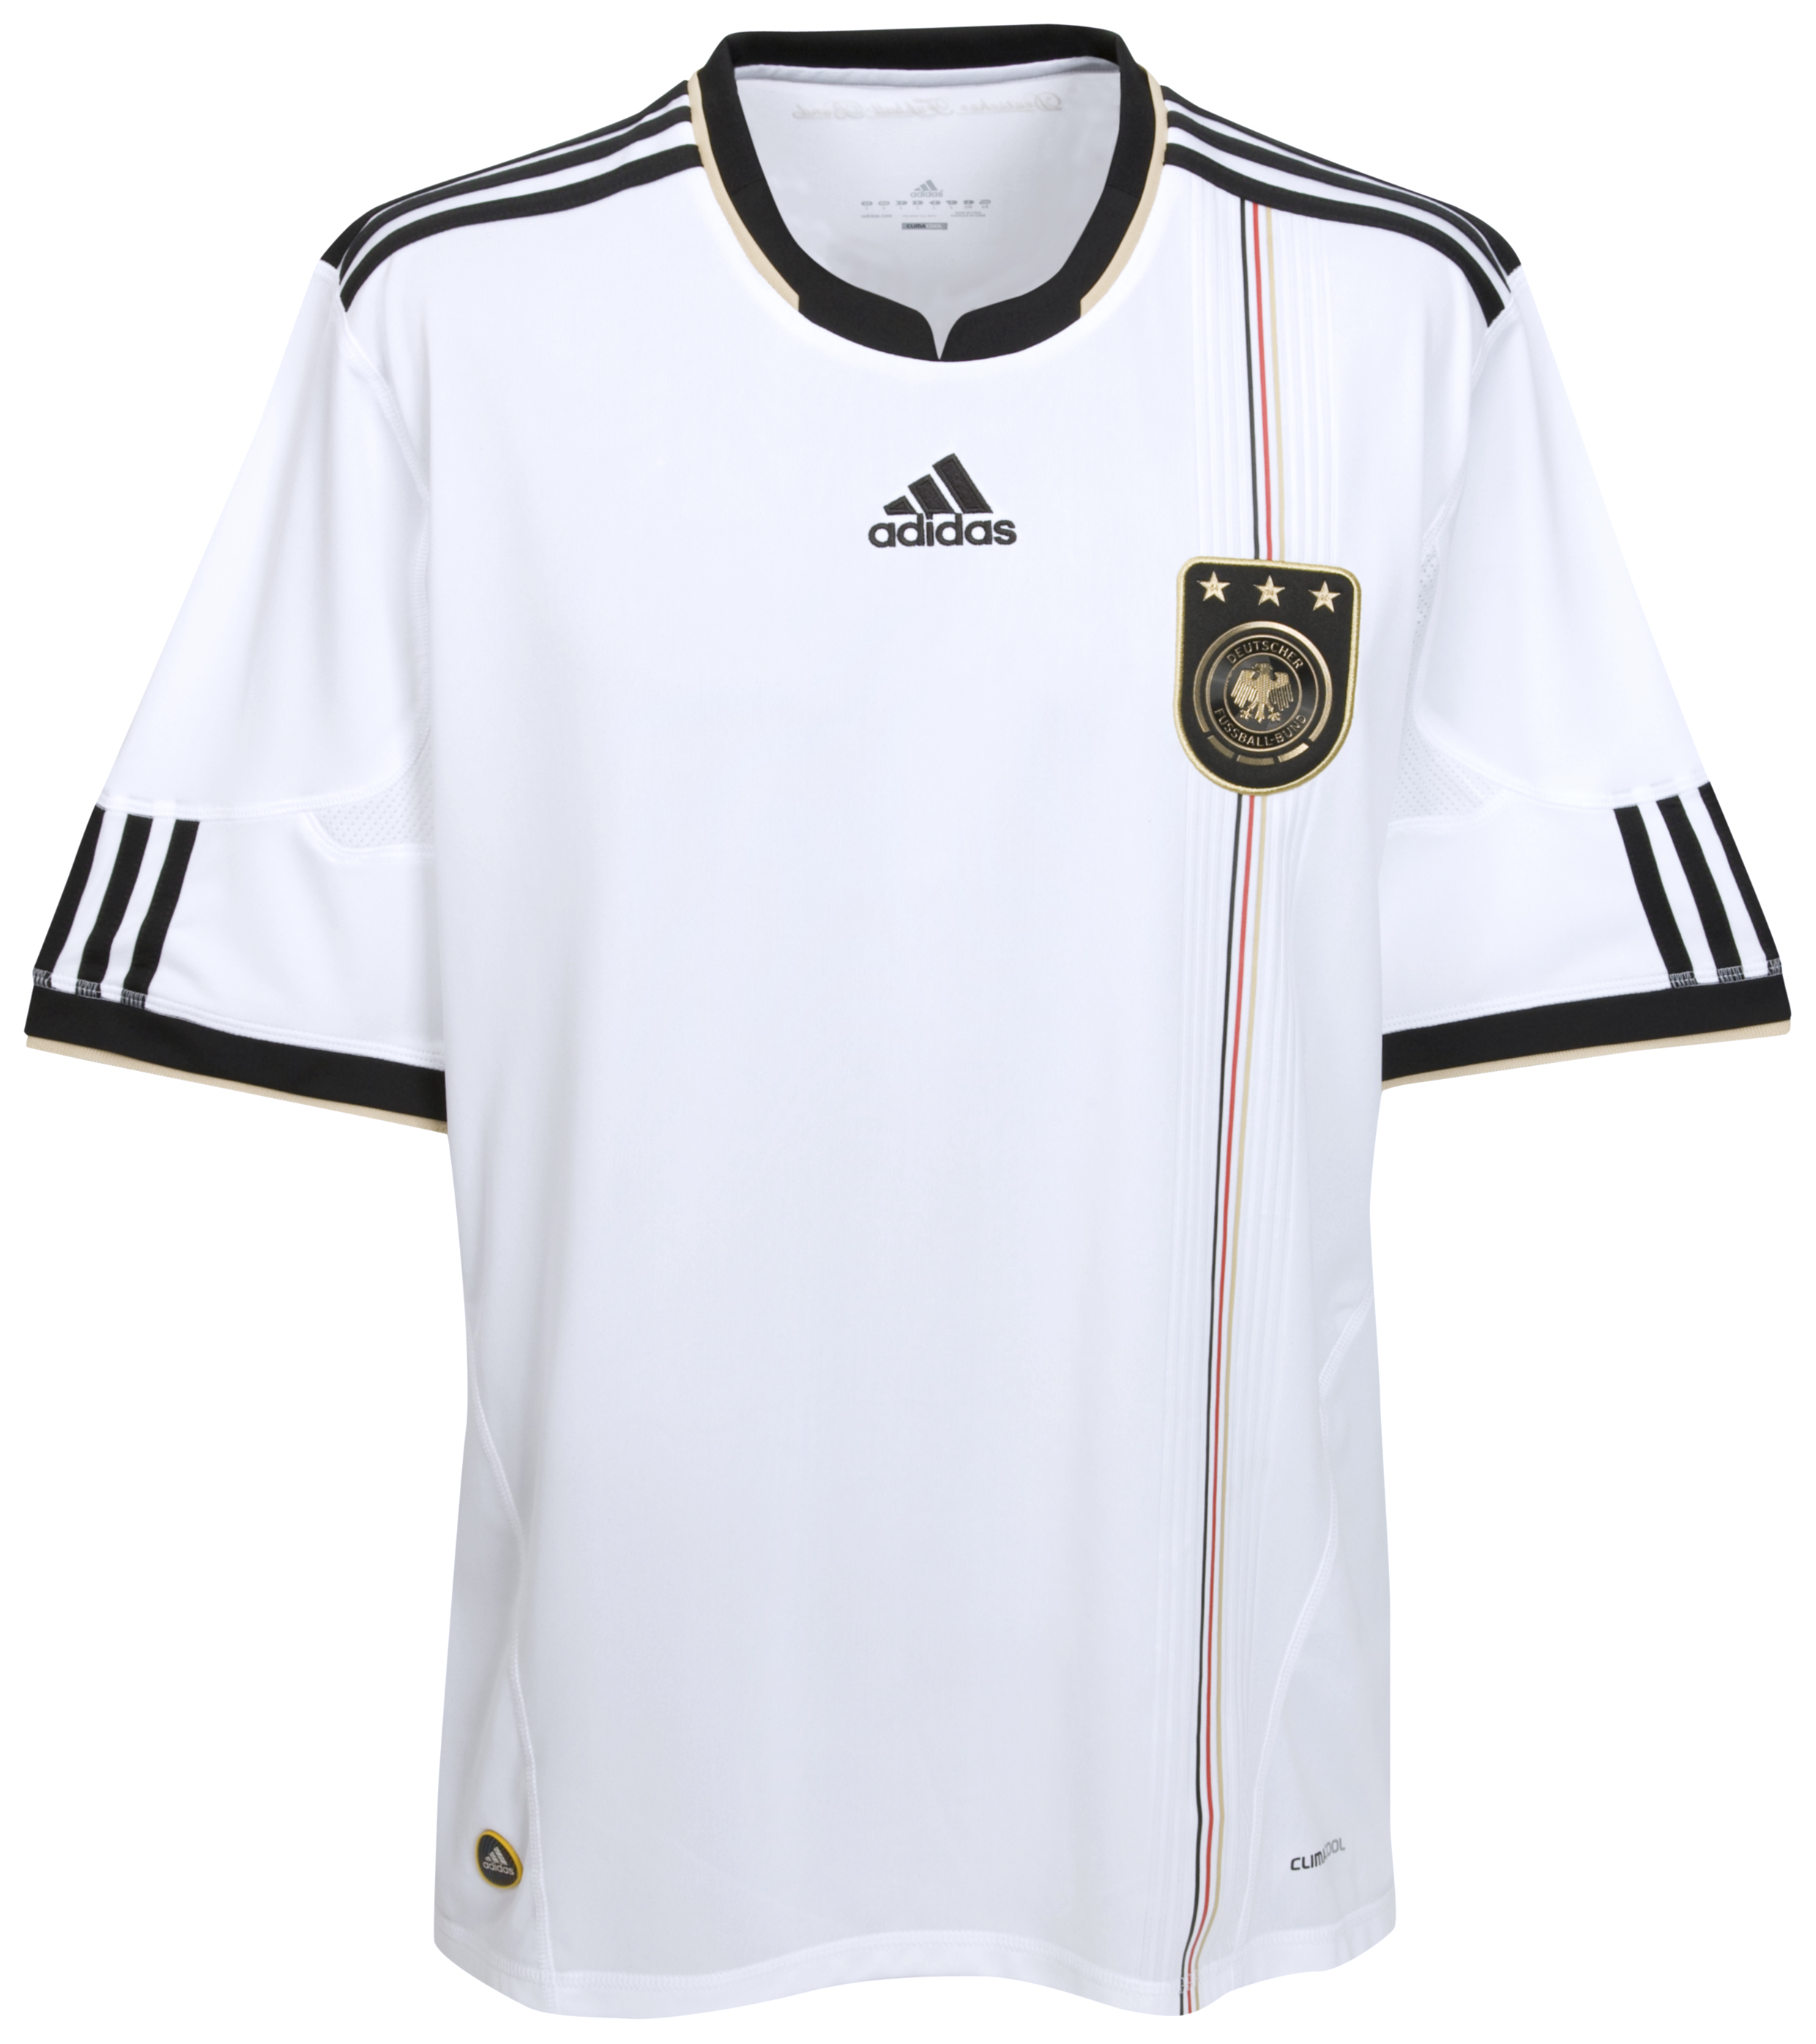 ملابس المنتخبات لكأس العالم (2010 Cfc-63741